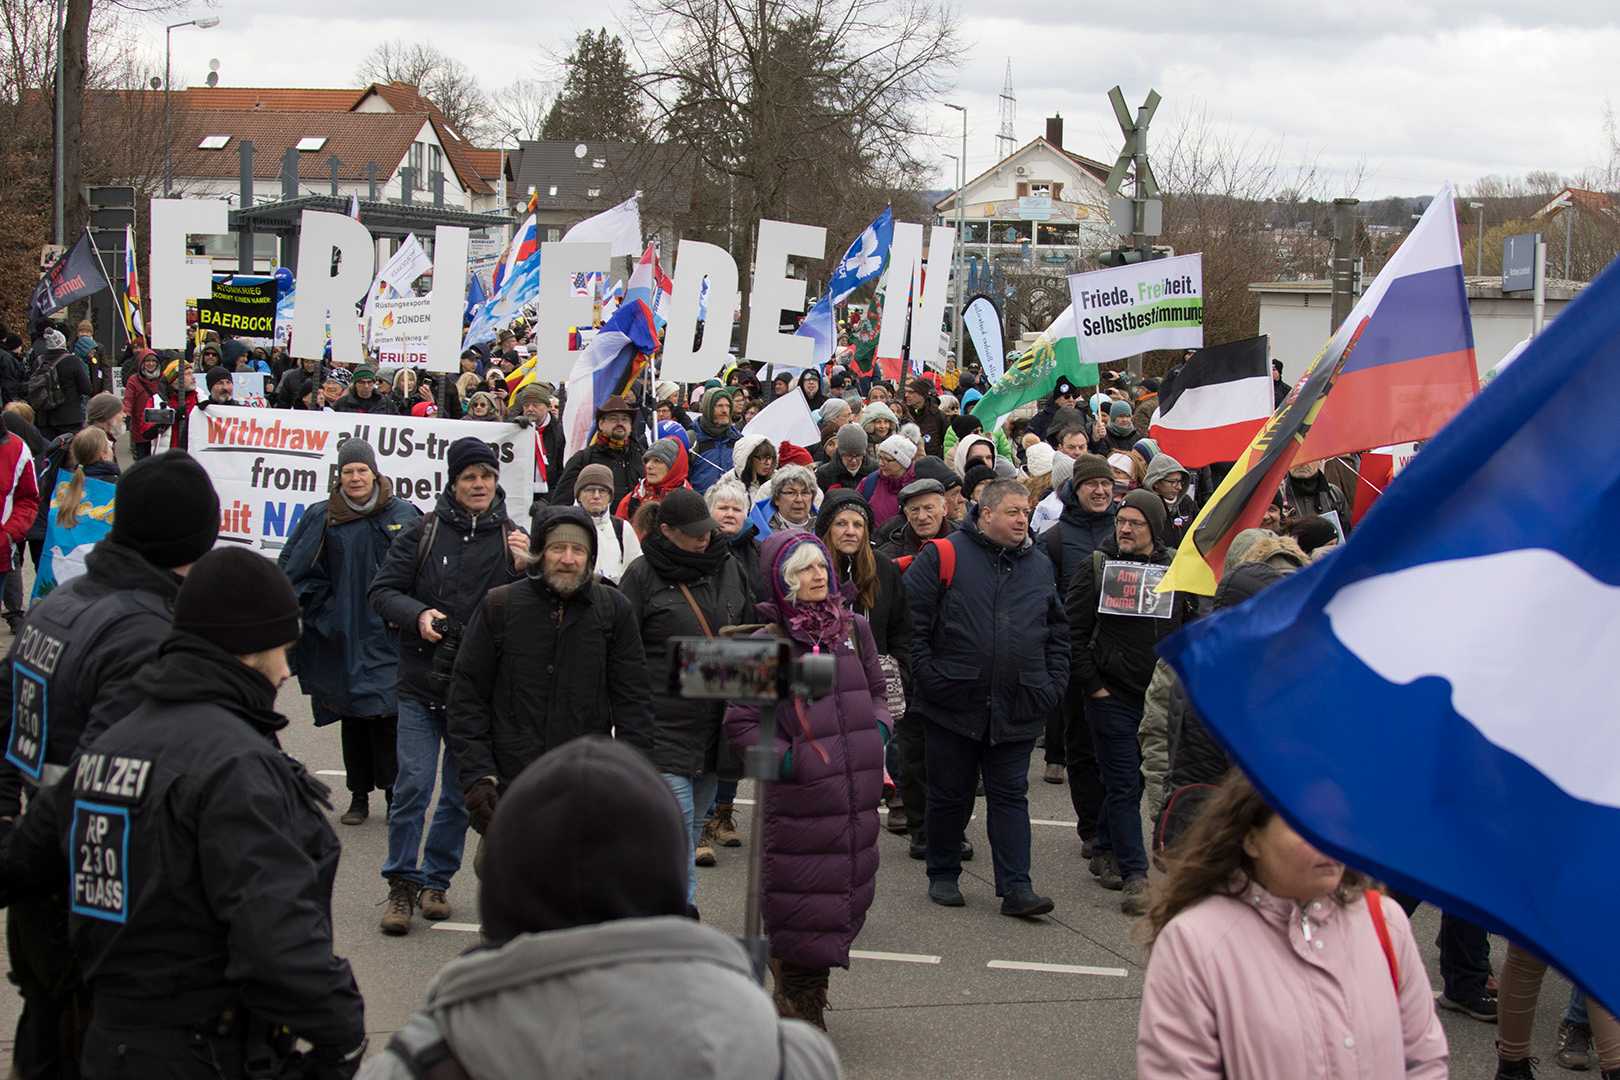 Foto der Demonstration in Ramstein. Im Hintergrund sind Buchstaben zu sehen, die jeweils von Teilnehmenden getragen werden und das Wort "Frieden" ergeben.